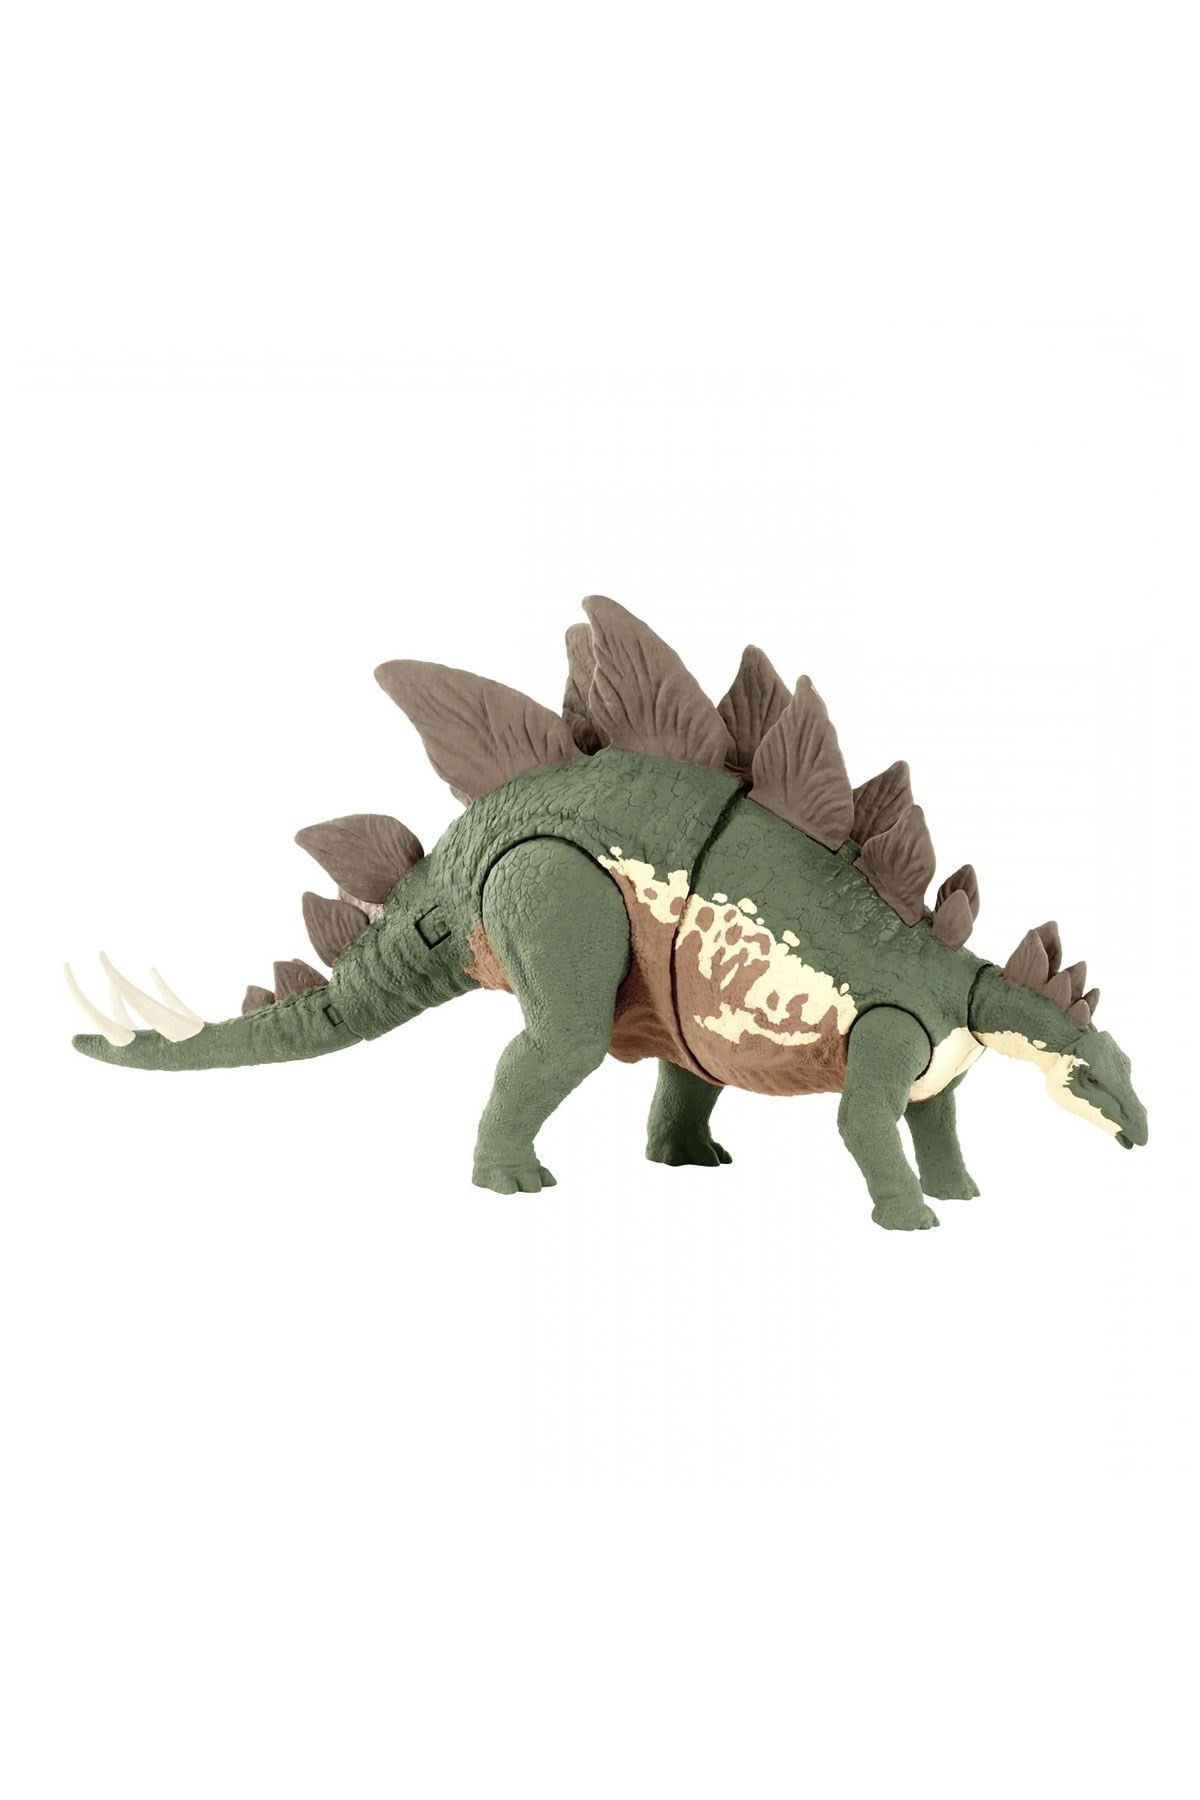 Jurassic World Mega Yok Ediciler Dinozor Figürleri GWD62